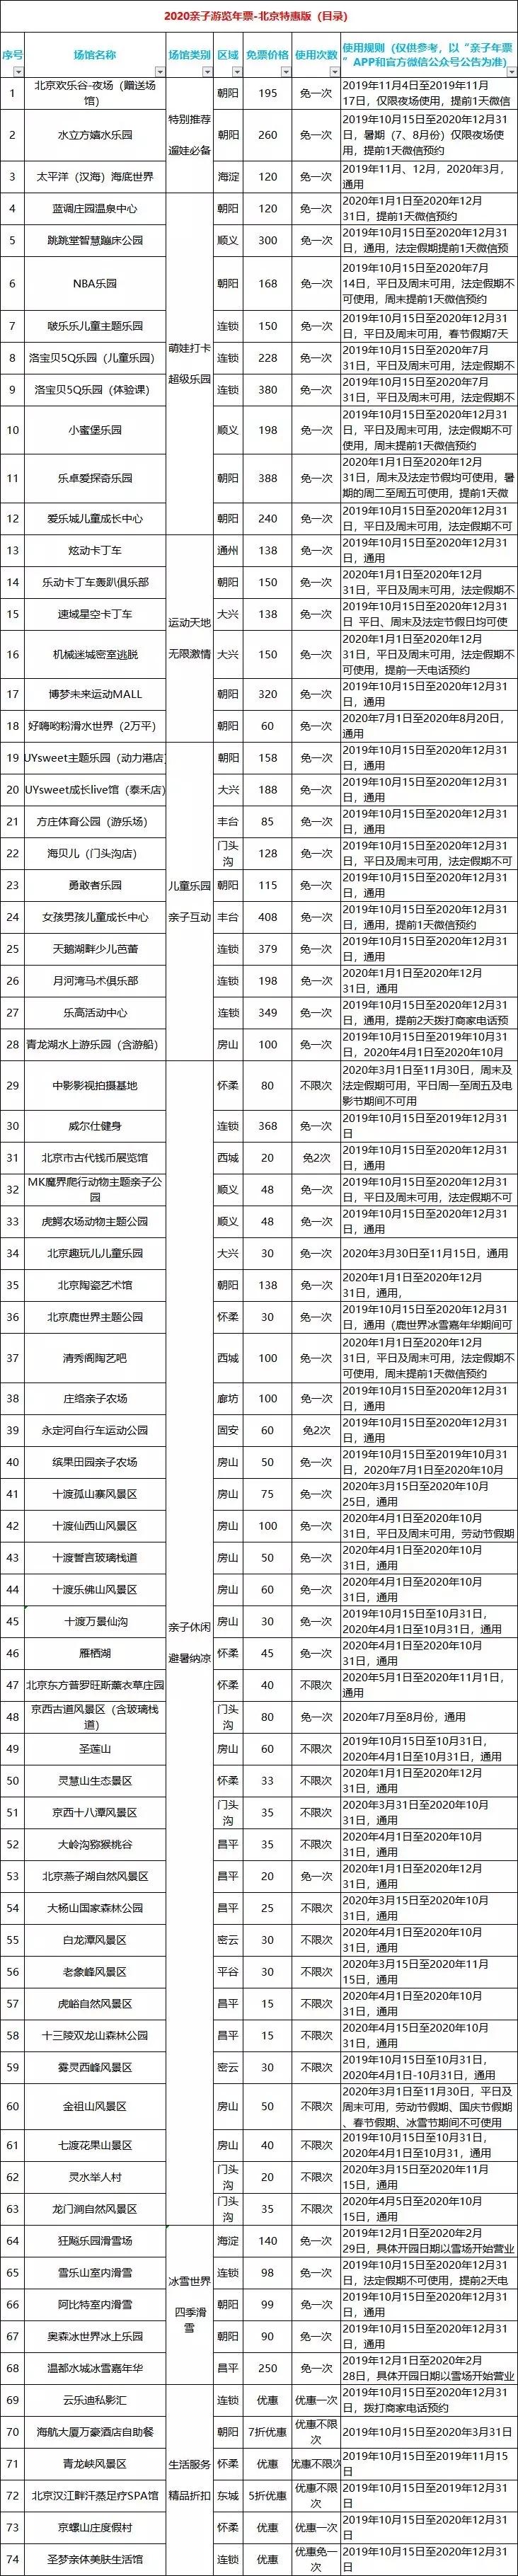 2020北京親子年票價格+景點名單+常見問題